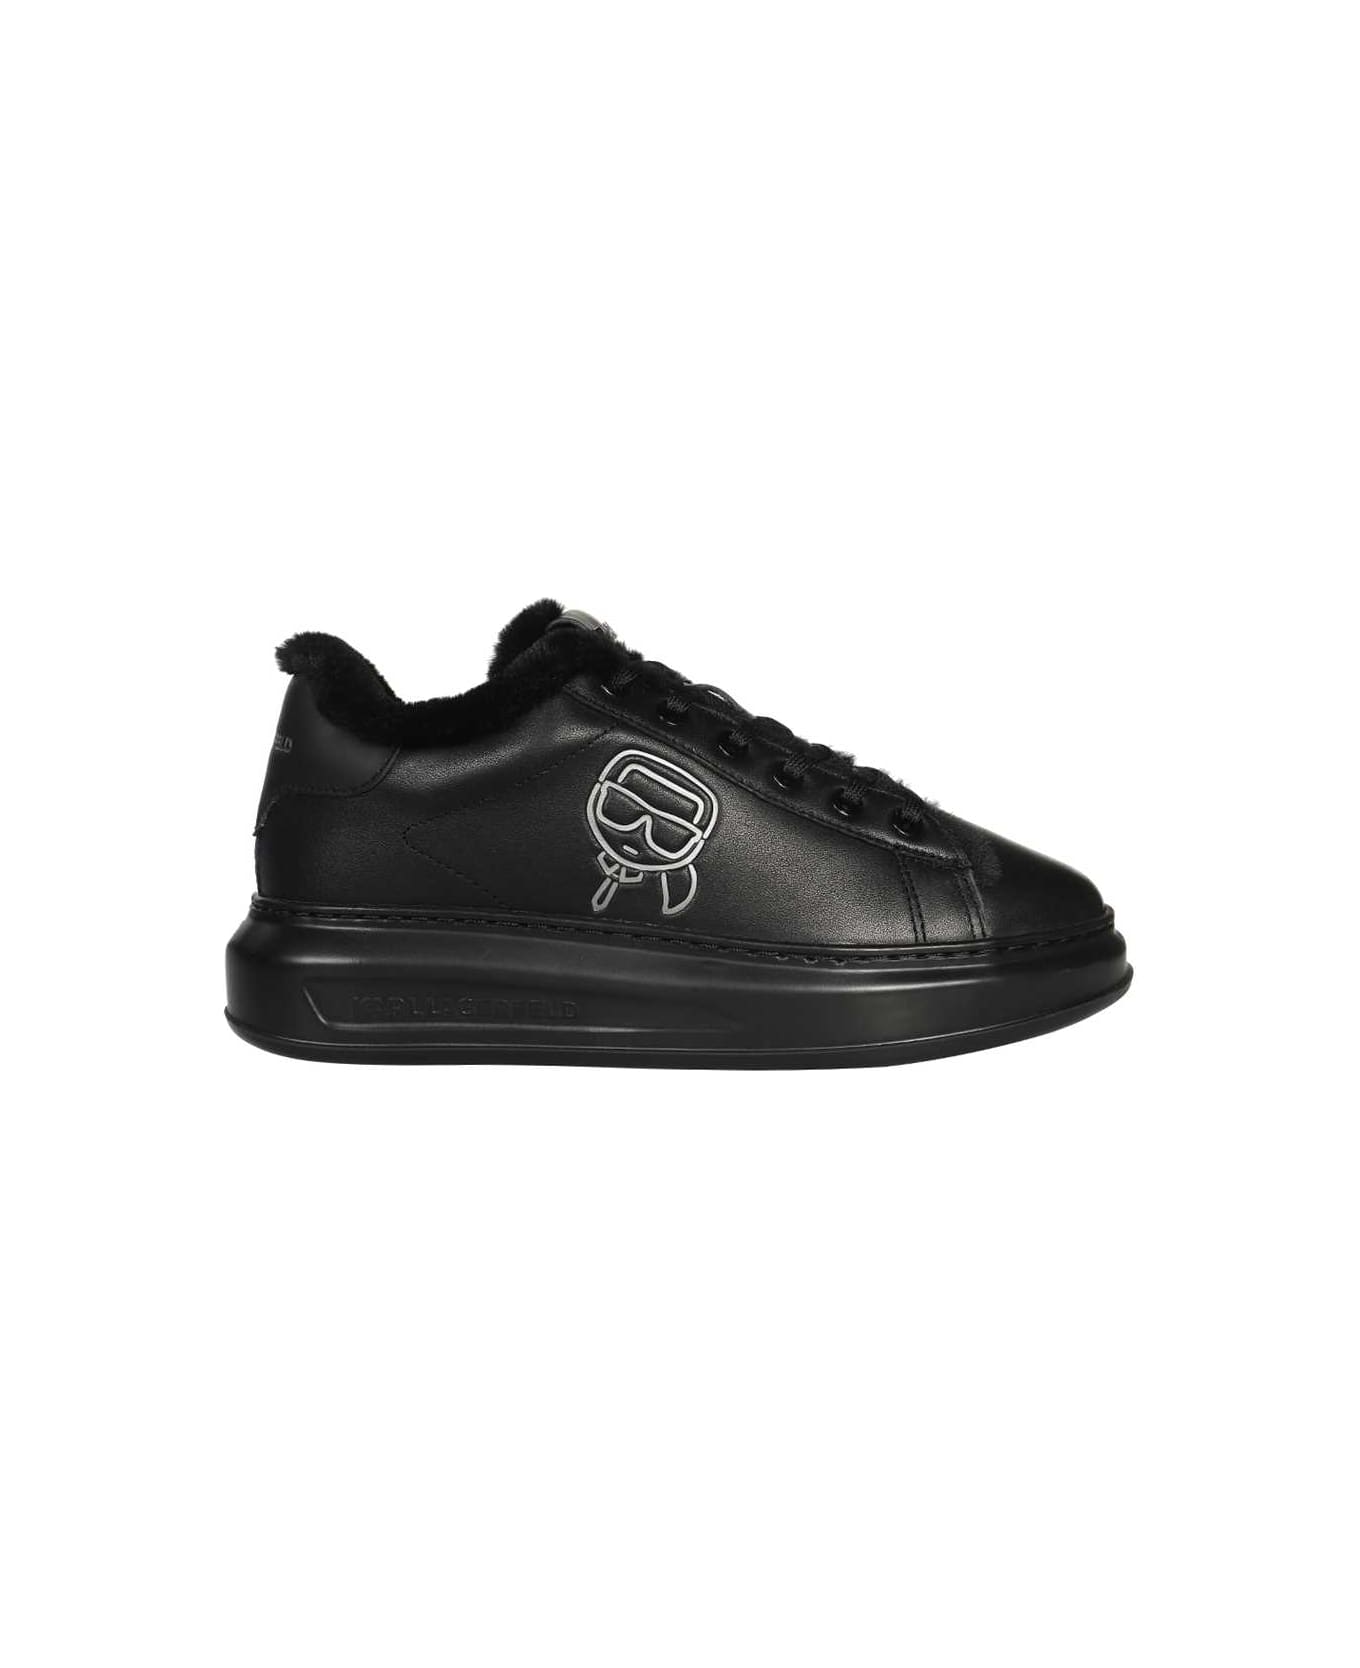 Karl Lagerfeld Low-top Sneakers - black スニーカー